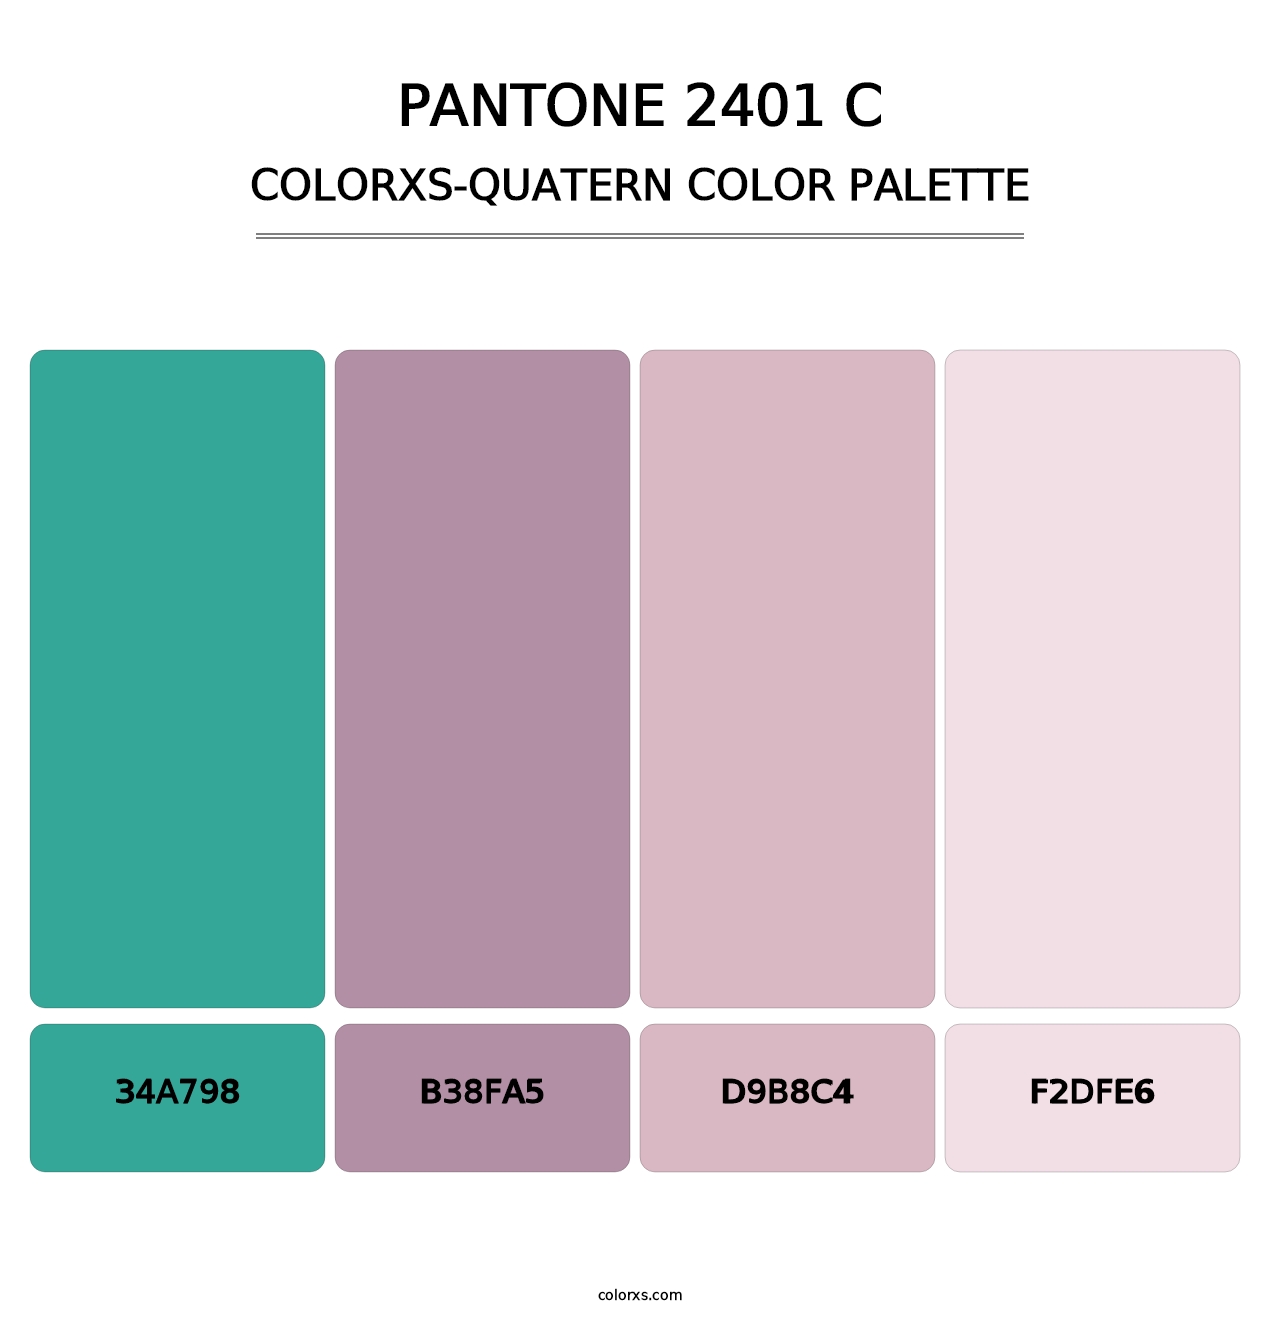 PANTONE 2401 C - Colorxs Quatern Palette